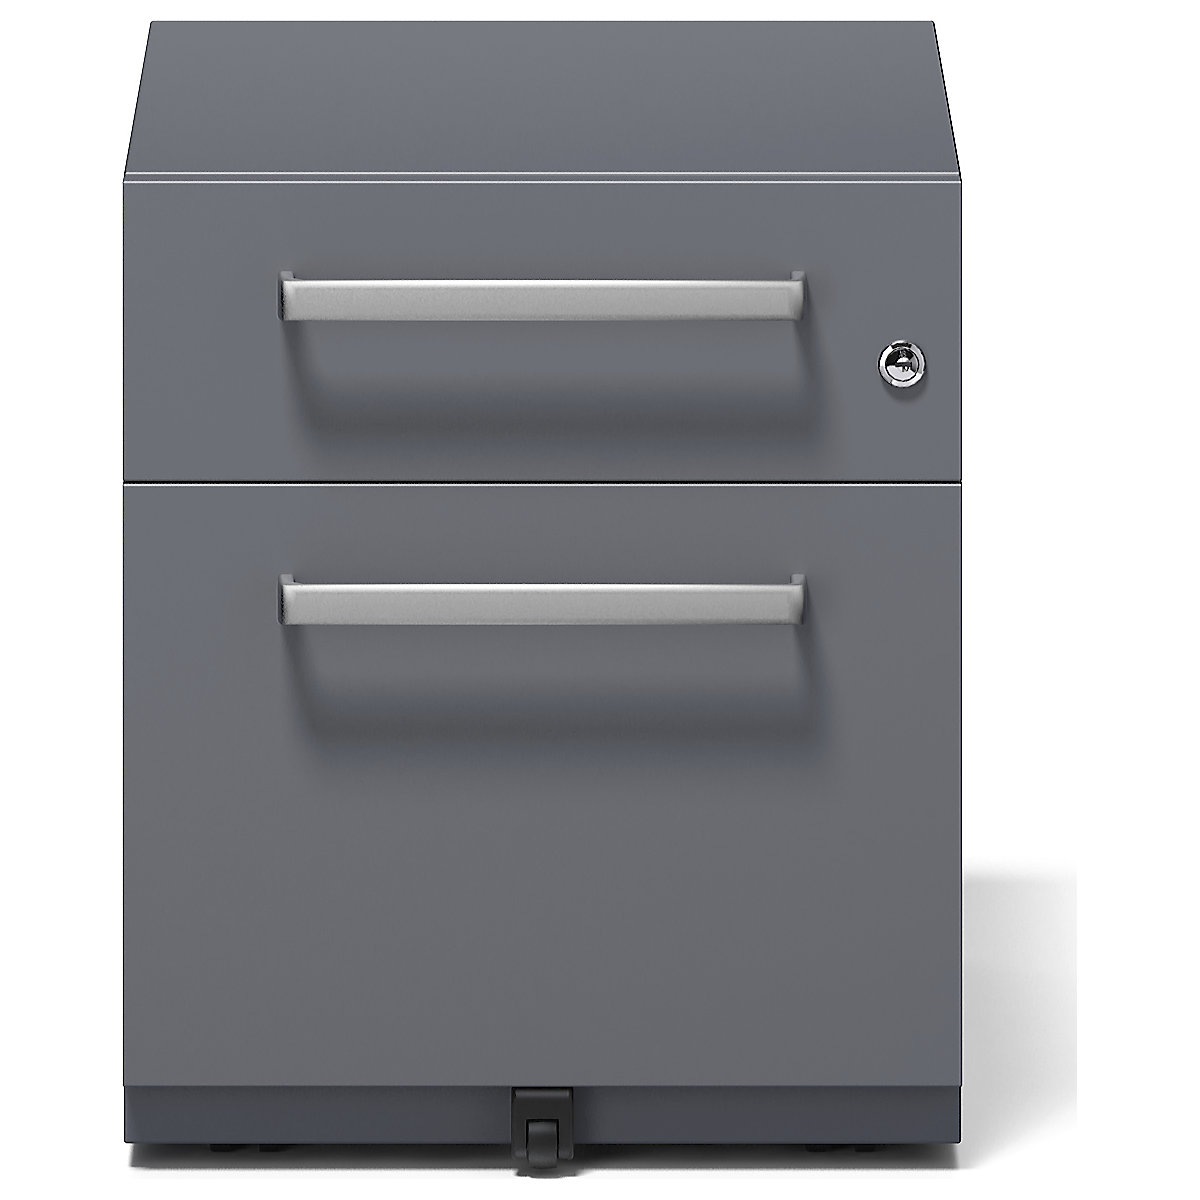 BISLEY – Buck rodante Note™ con 1 archivador colgante y 1 cajón universal (Imagen del producto 13)